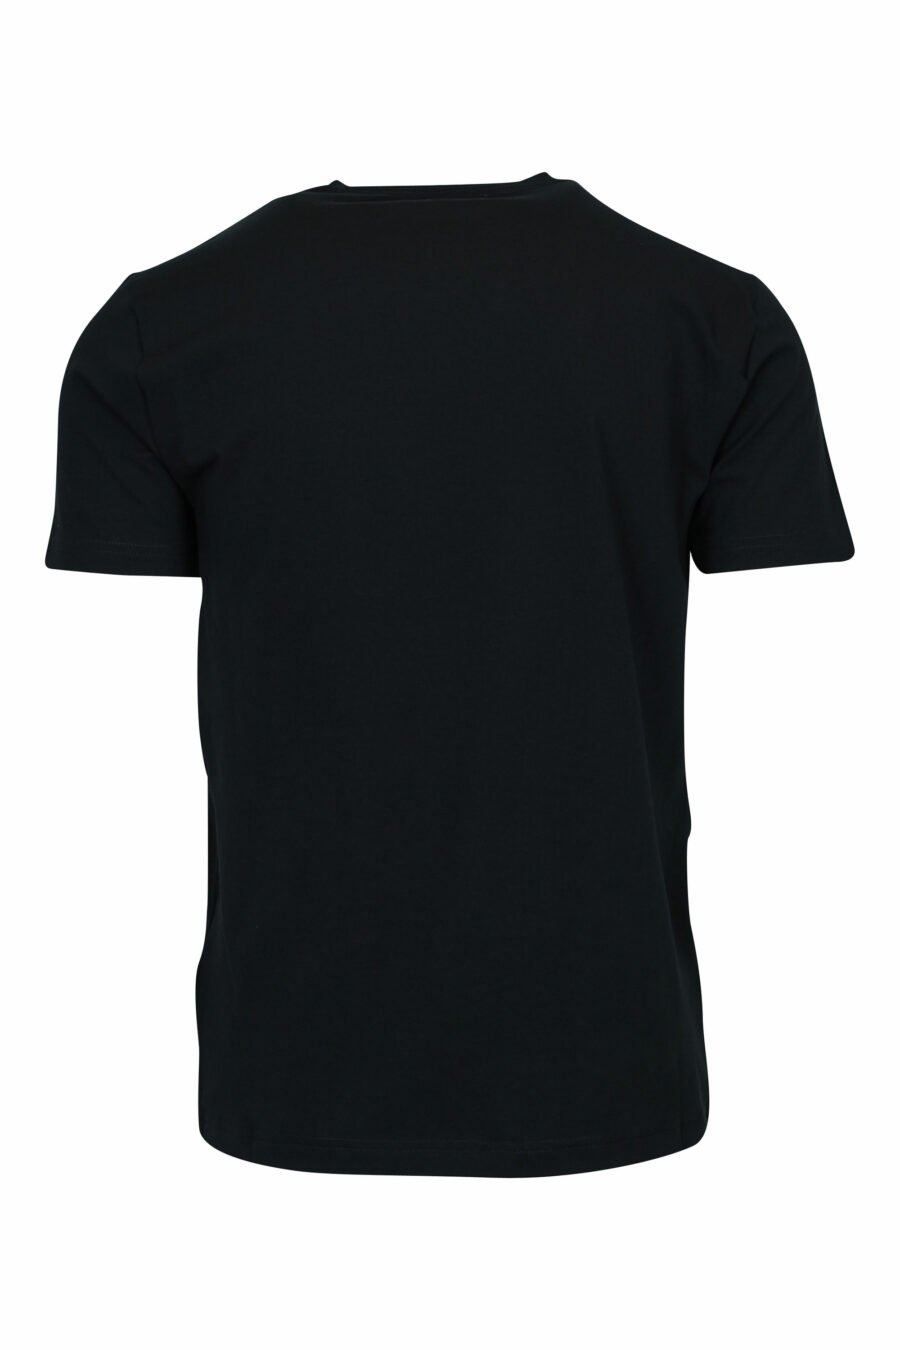 T-shirt preta com maxilogo "lux identity" em ouro néon - 8057970672234 1